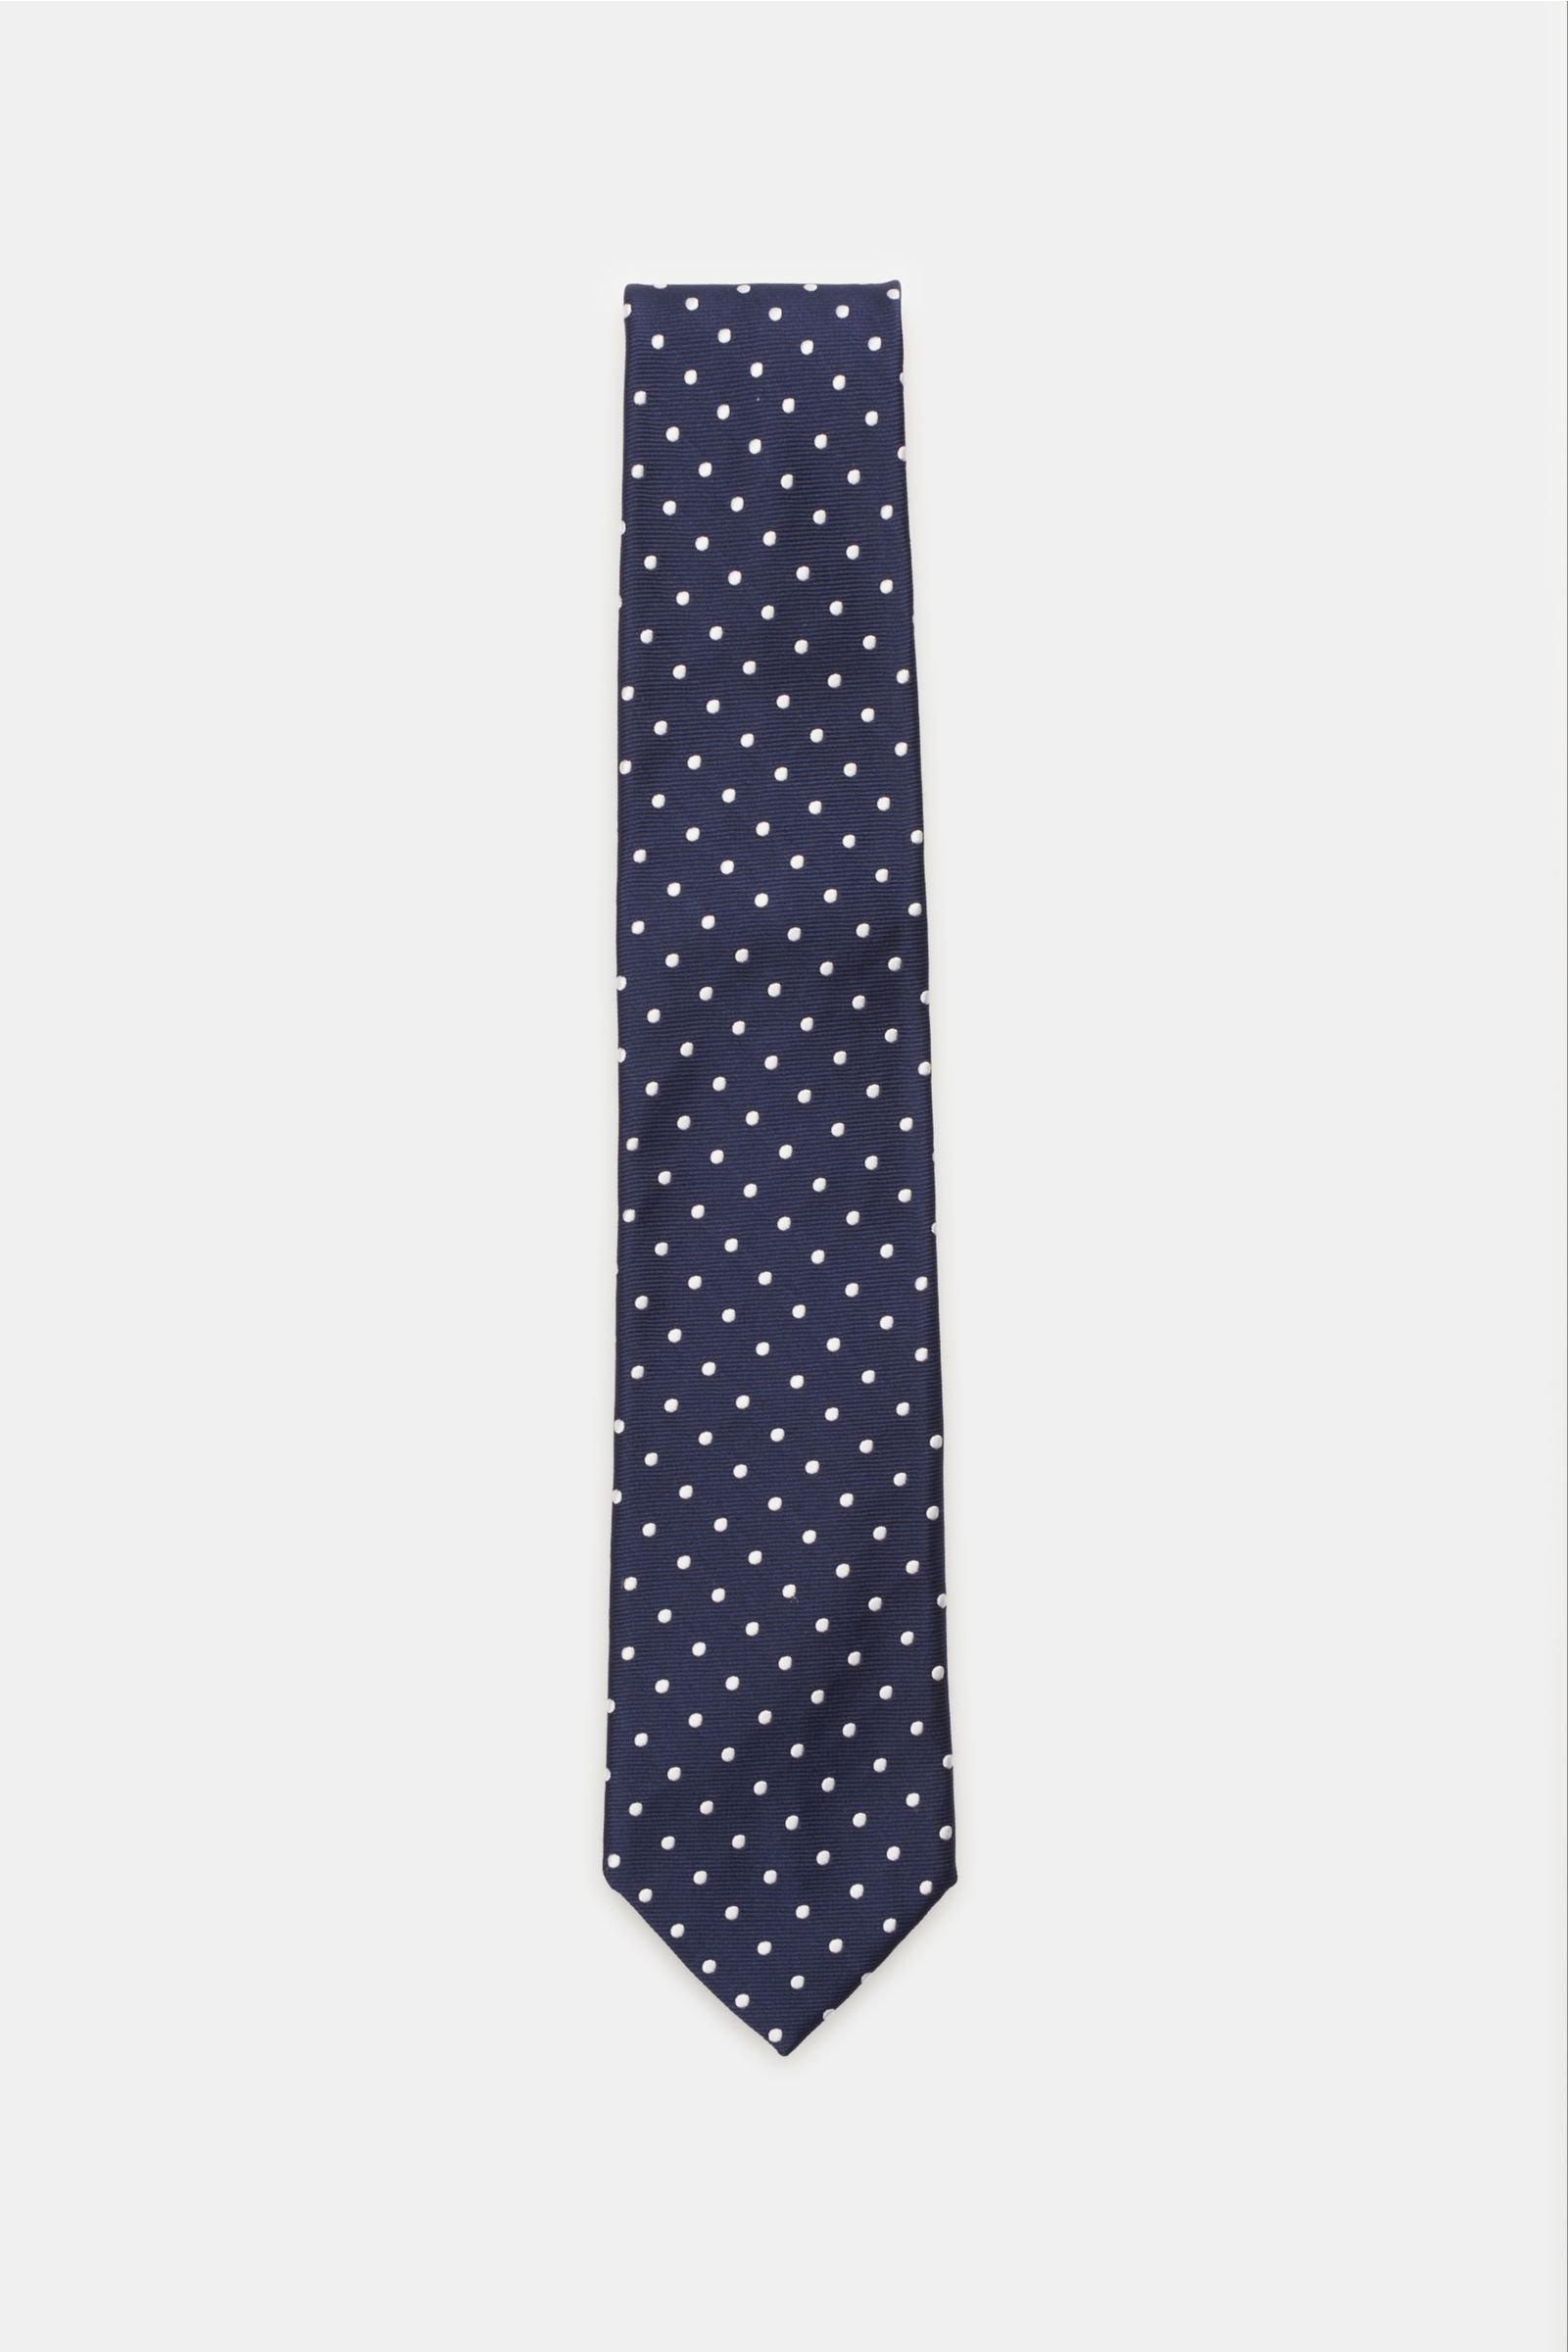 Silk tie navy dotted